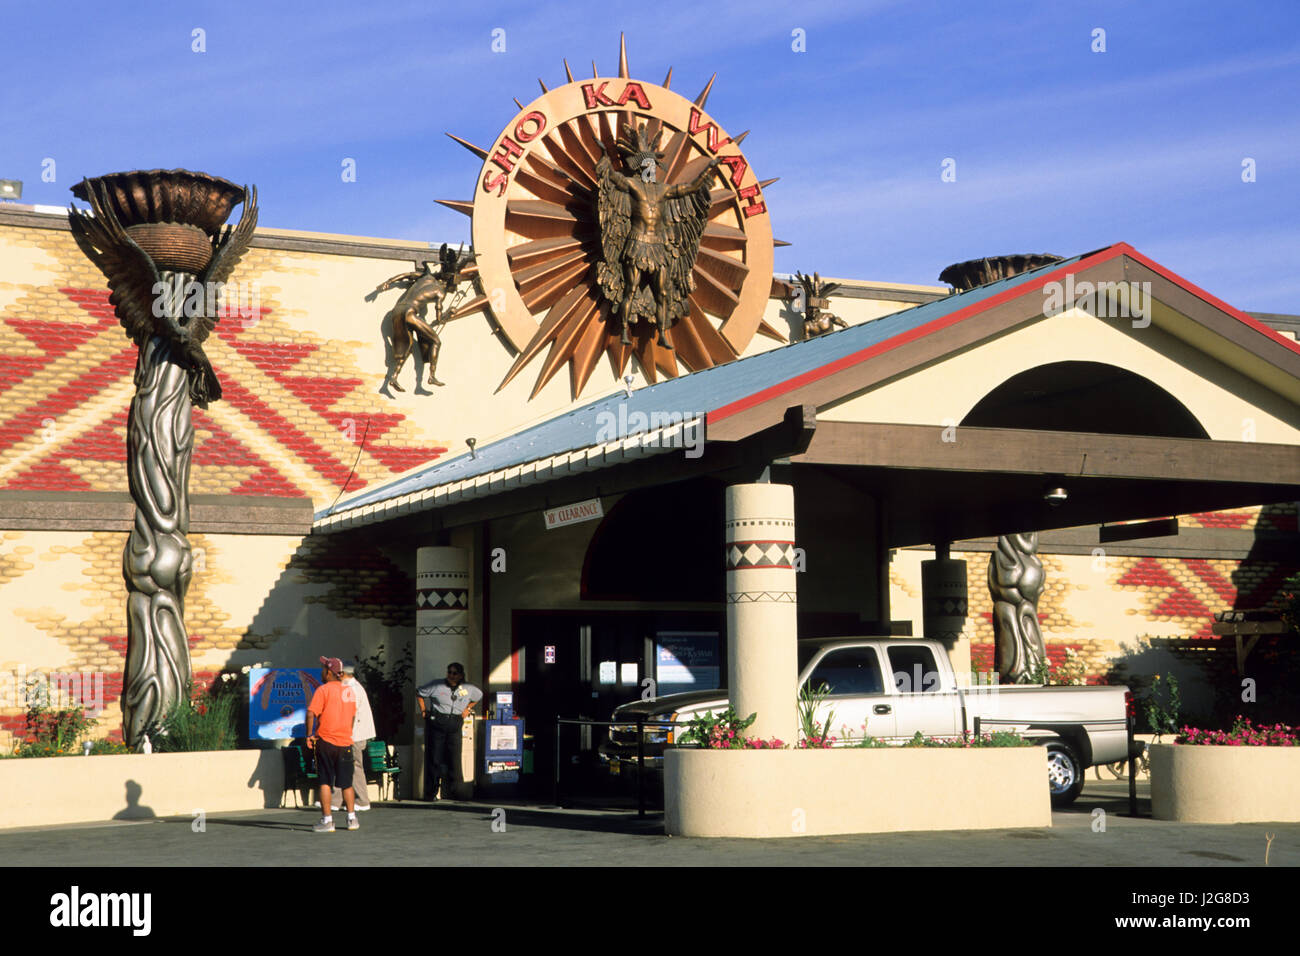 Le développement économique et commercial pour la tribu Pomo Hopland est la bande d'Indiens Pomo Casino appelé Sho Ka Wah Hopland en Californie Banque D'Images